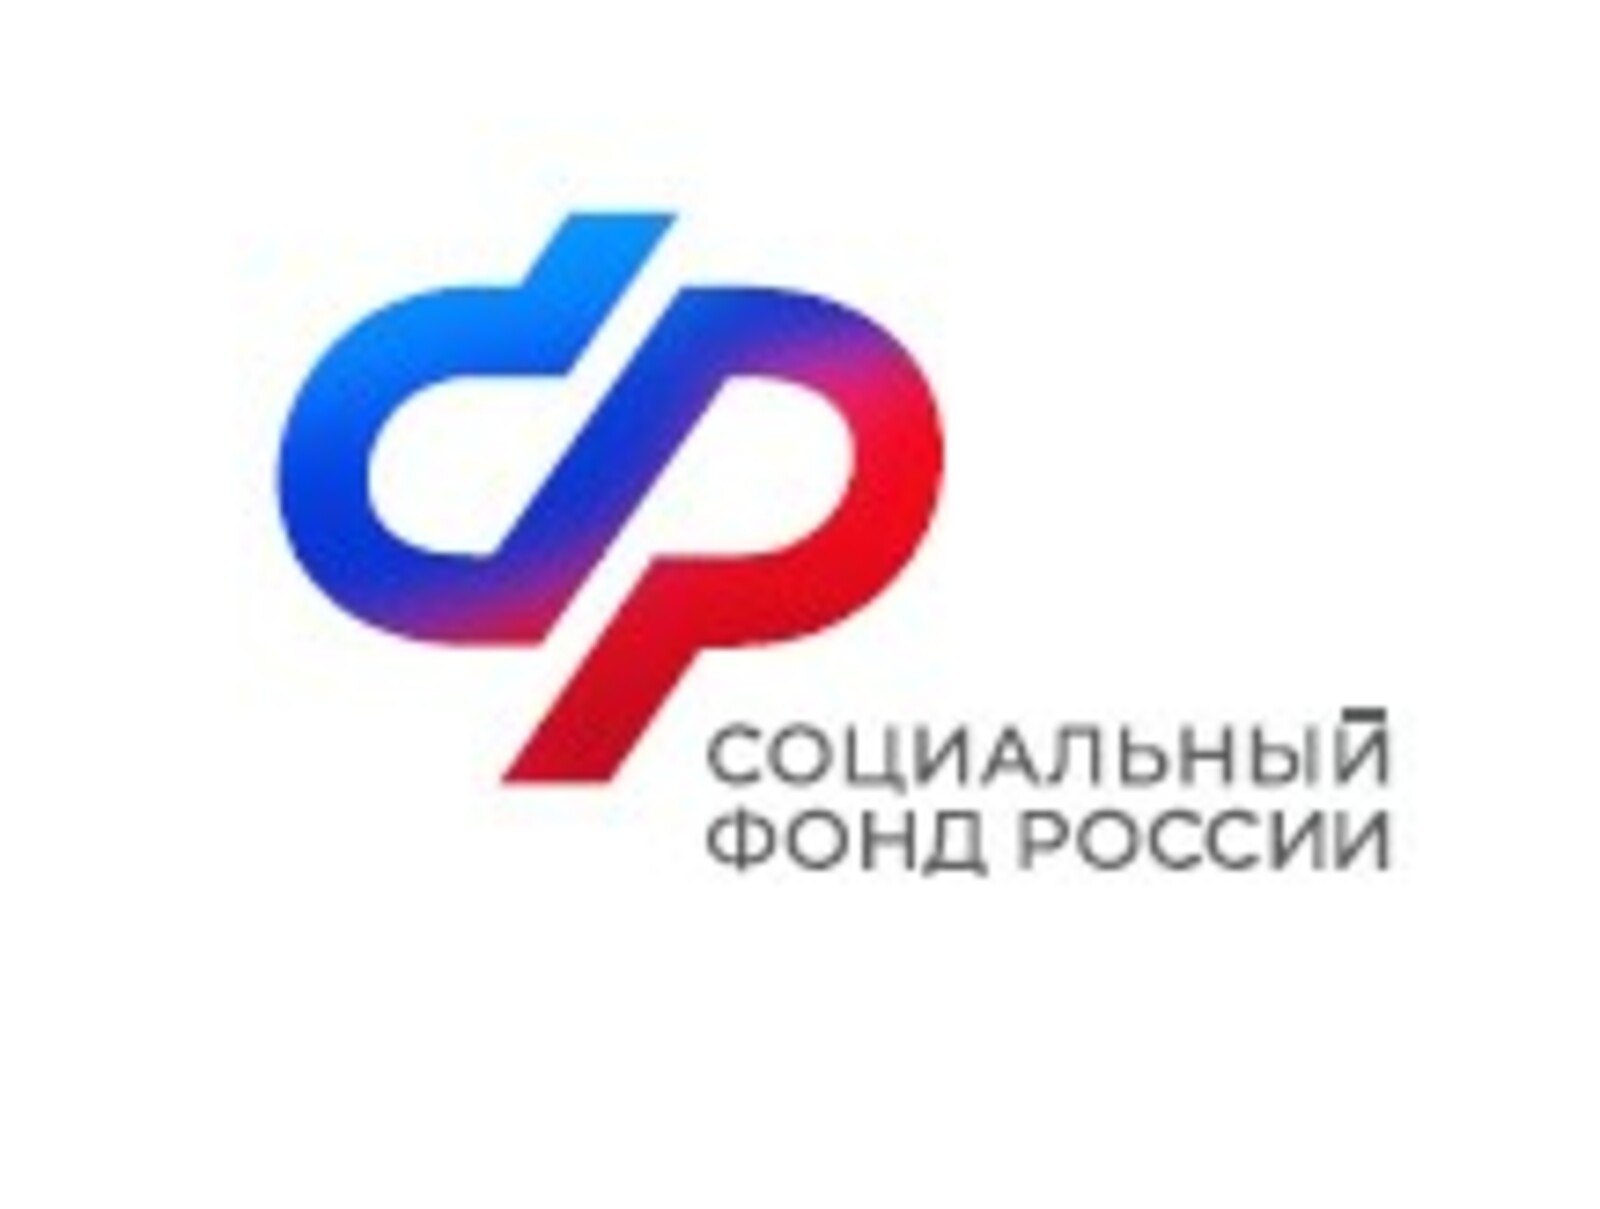 Более 100 тысяч федеральных льготников в Республике Башкортостан получают набор социальных услуг в натуральном виде